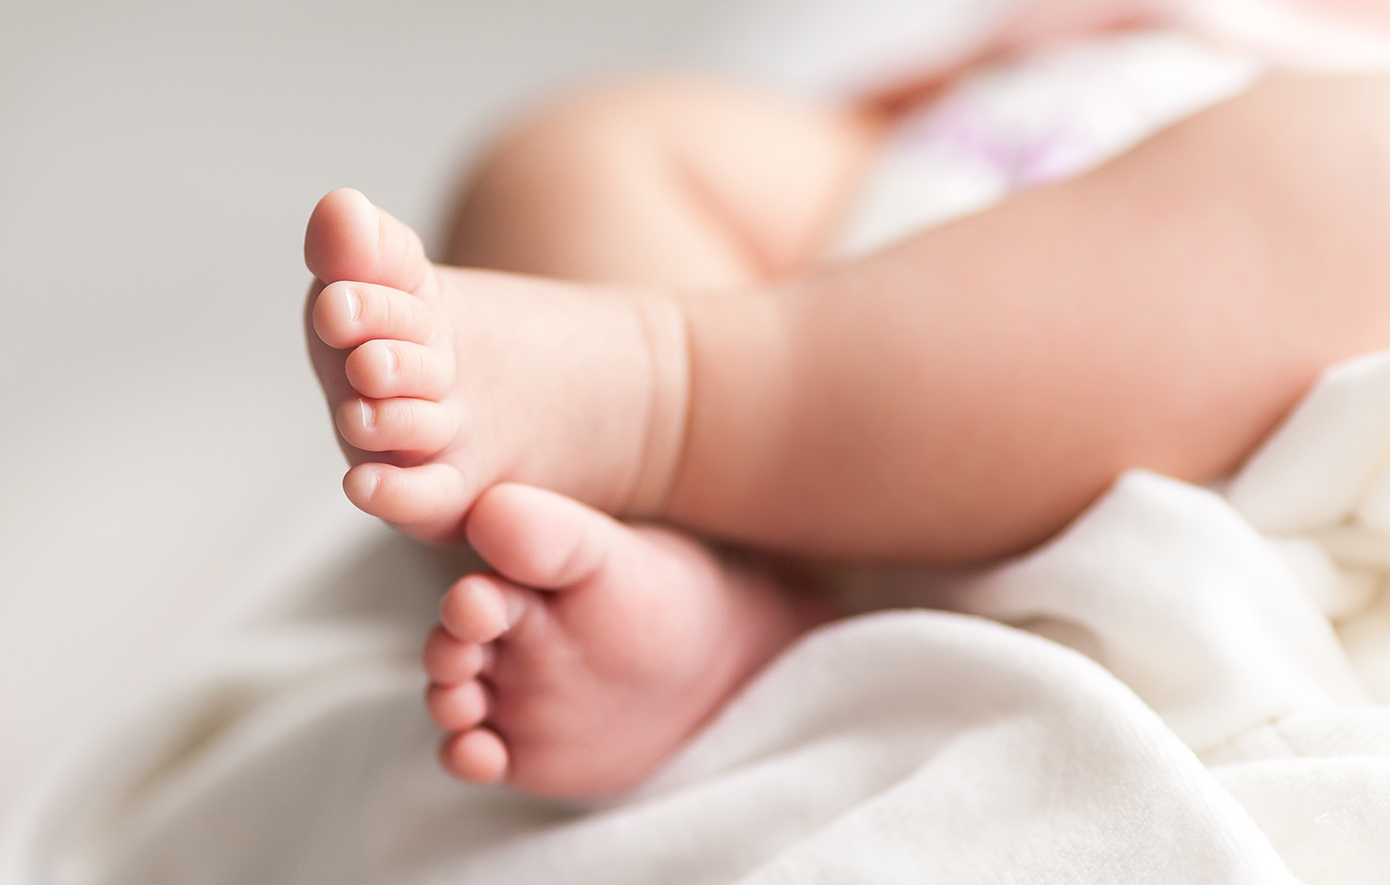 Στη ΜΕΘ του Ιπποκρατείου νοσοκομείου στη Θεσσαλονίκη νοσηλεύεται μωρό πεντέμιση μηνών με εσωτερική αιμορραγία στο κεφάλι